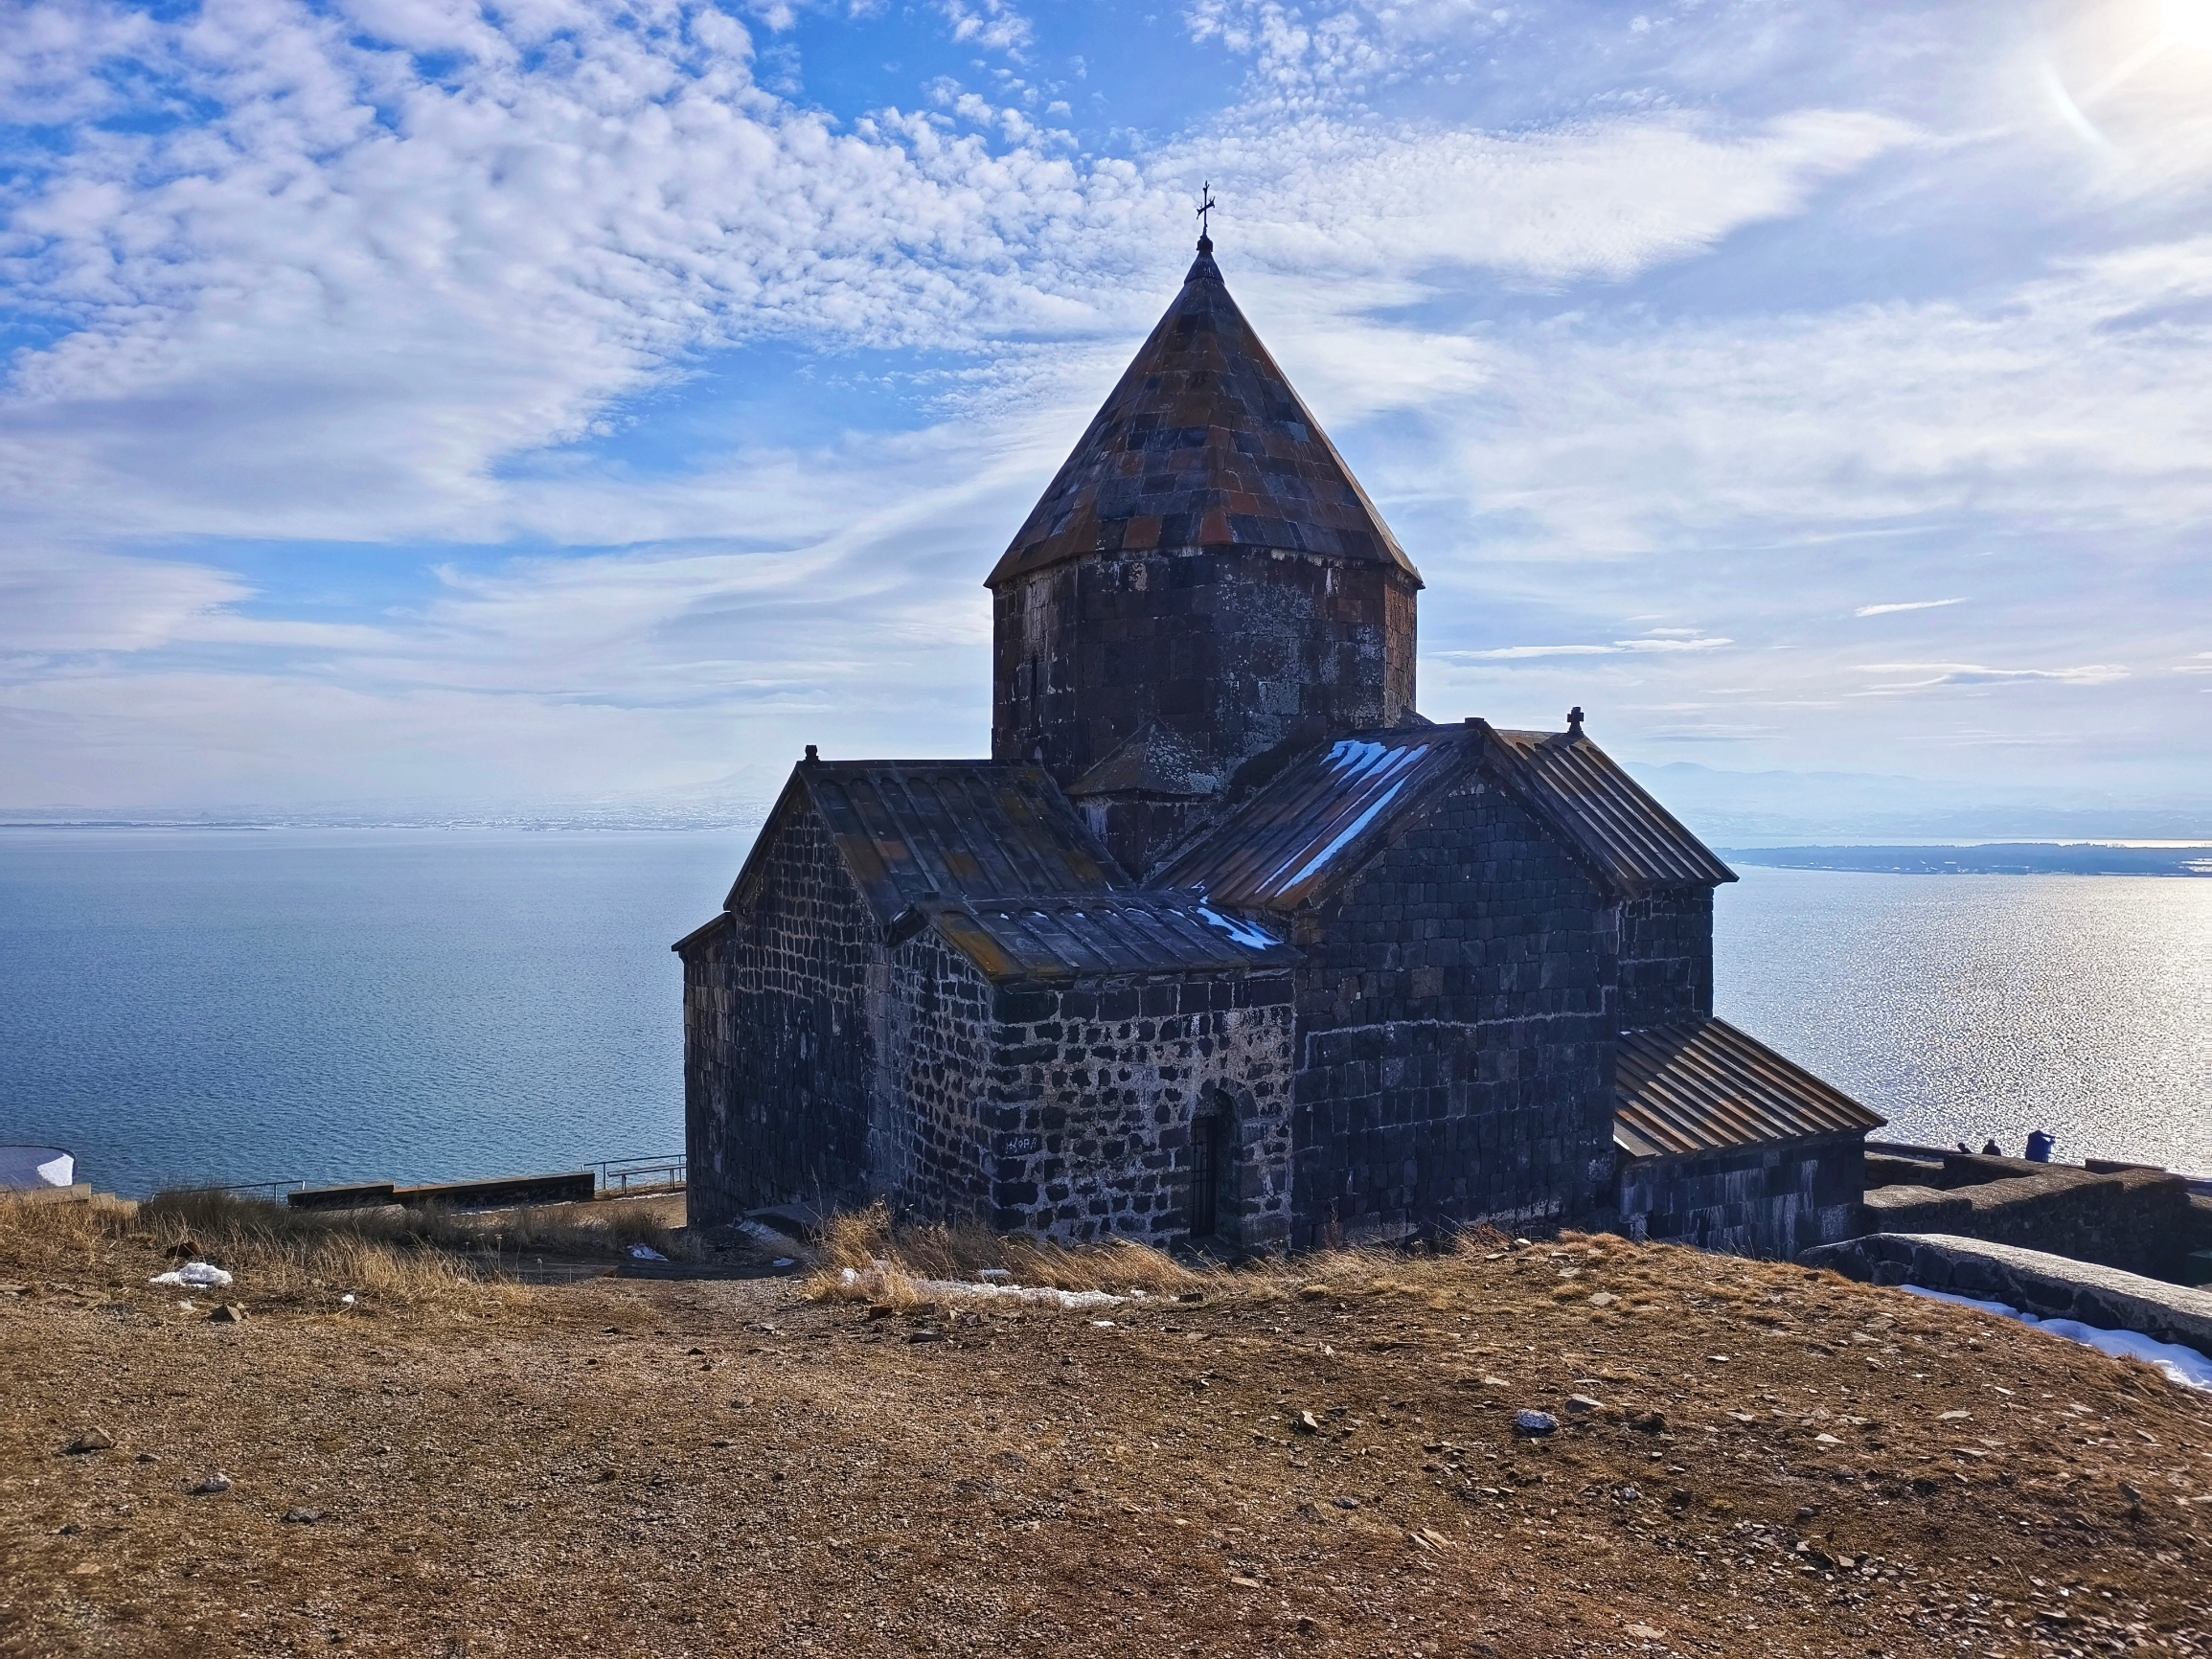 塞凡湖，​世界高原淡水湖中排名第二，占据亚美尼亚的3%国土面积，蓝色的湖水映衬雪山，风景超赞。 仅有